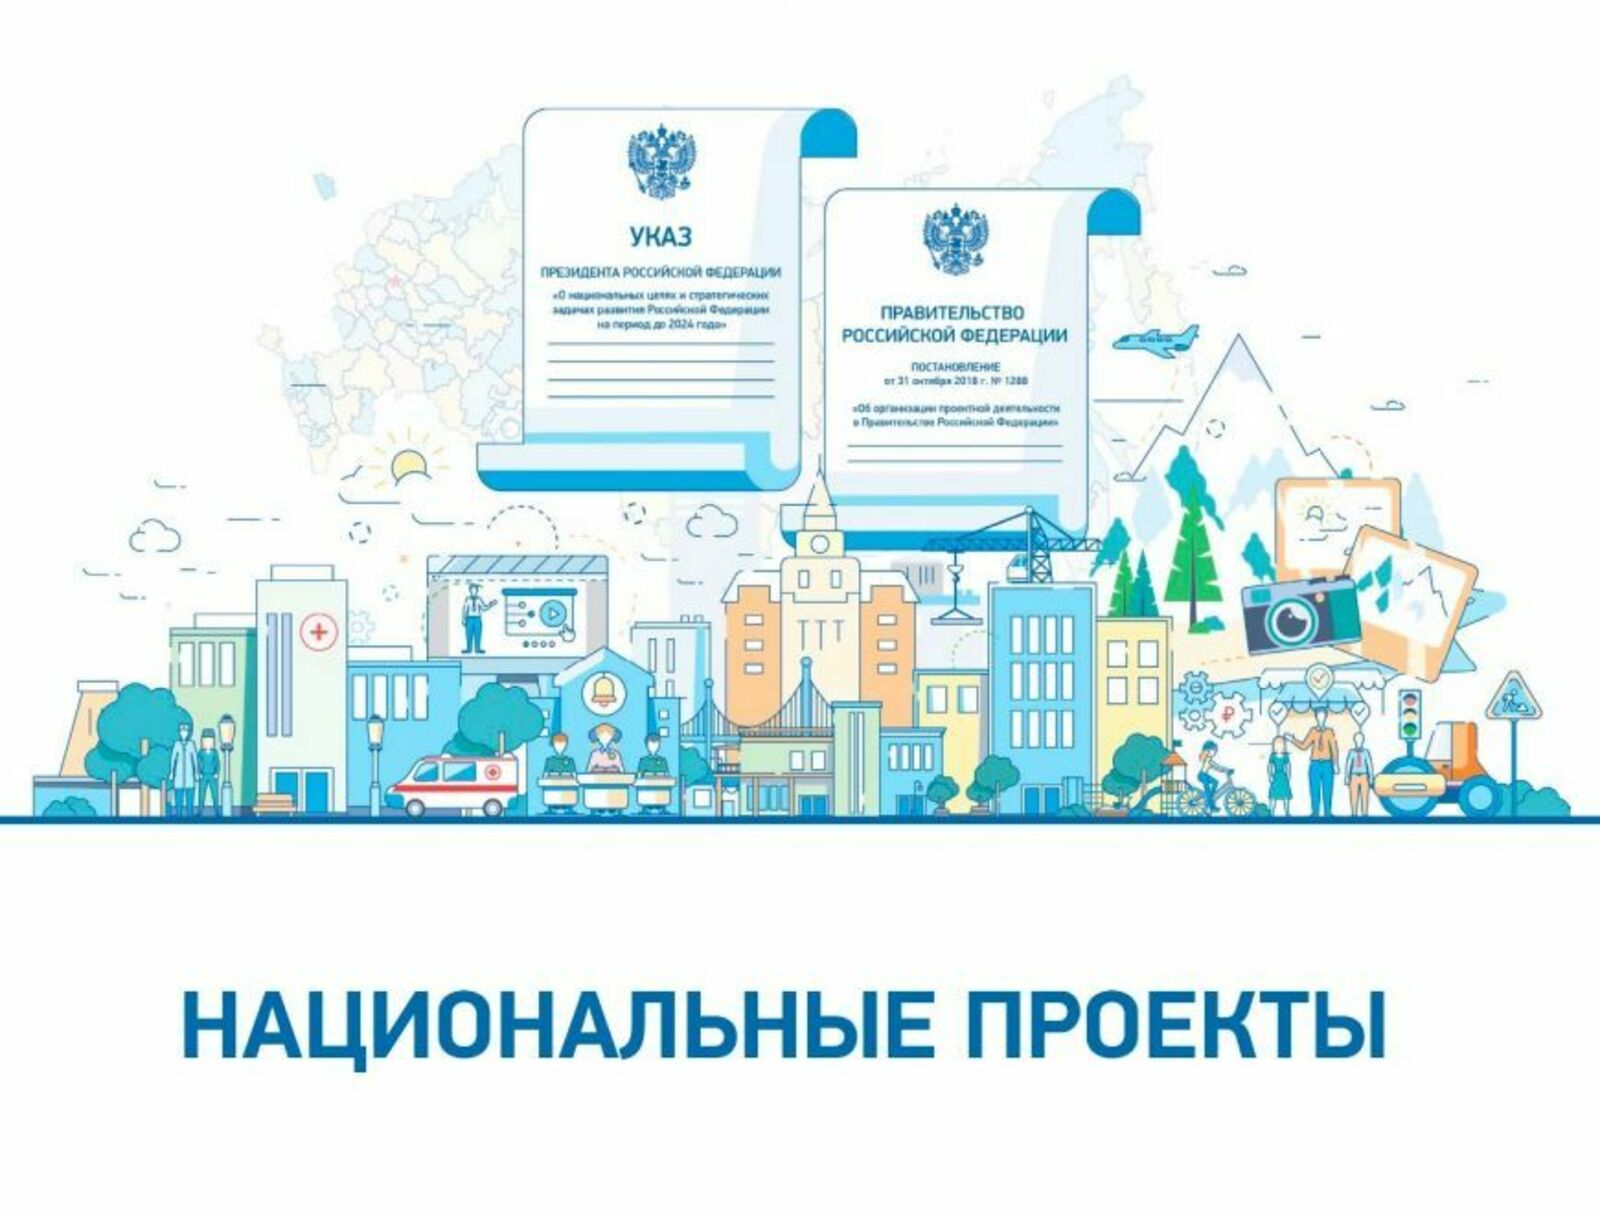 Башкирия вошла в ТОП-5 регионов России по числу инфоповодов по освещению нацпроектов